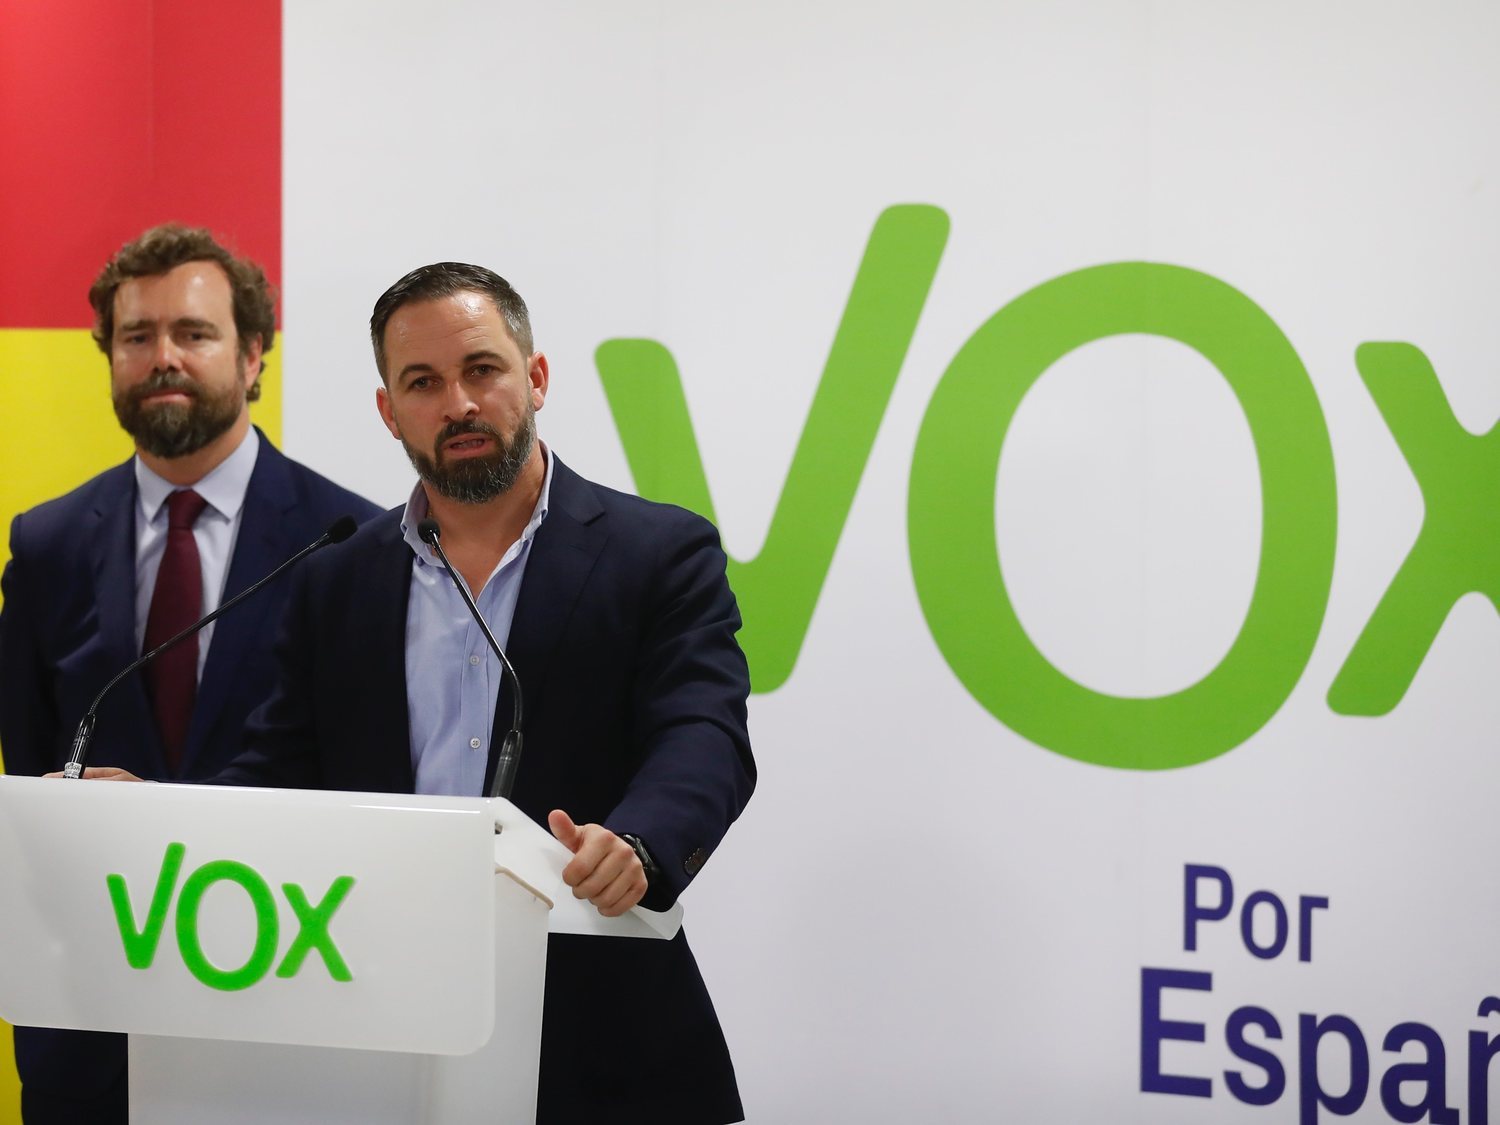 Borja, el joven condenado por matar un ladrón, rechaza los 180.000 euros que le ofrece VOX